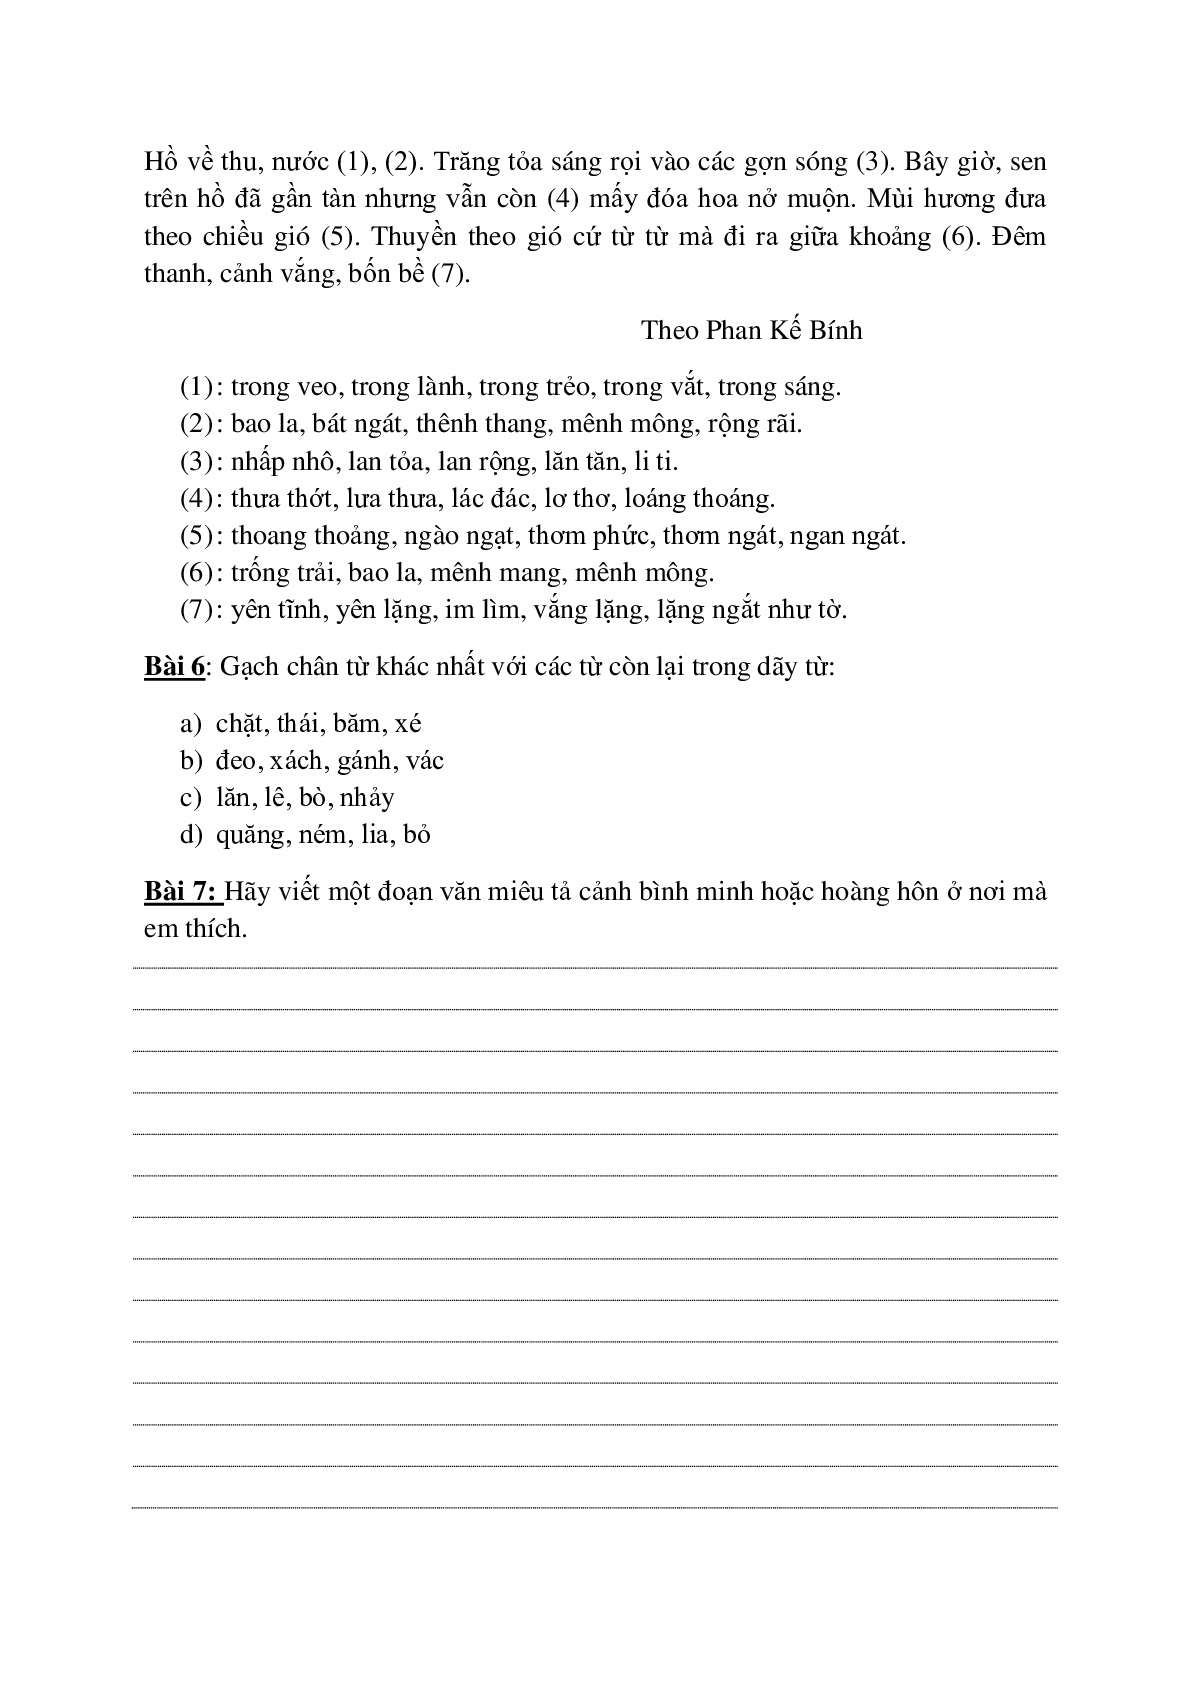 Bài tập nâng cao môn Tiếng Việt lớp 5 (trang 9)